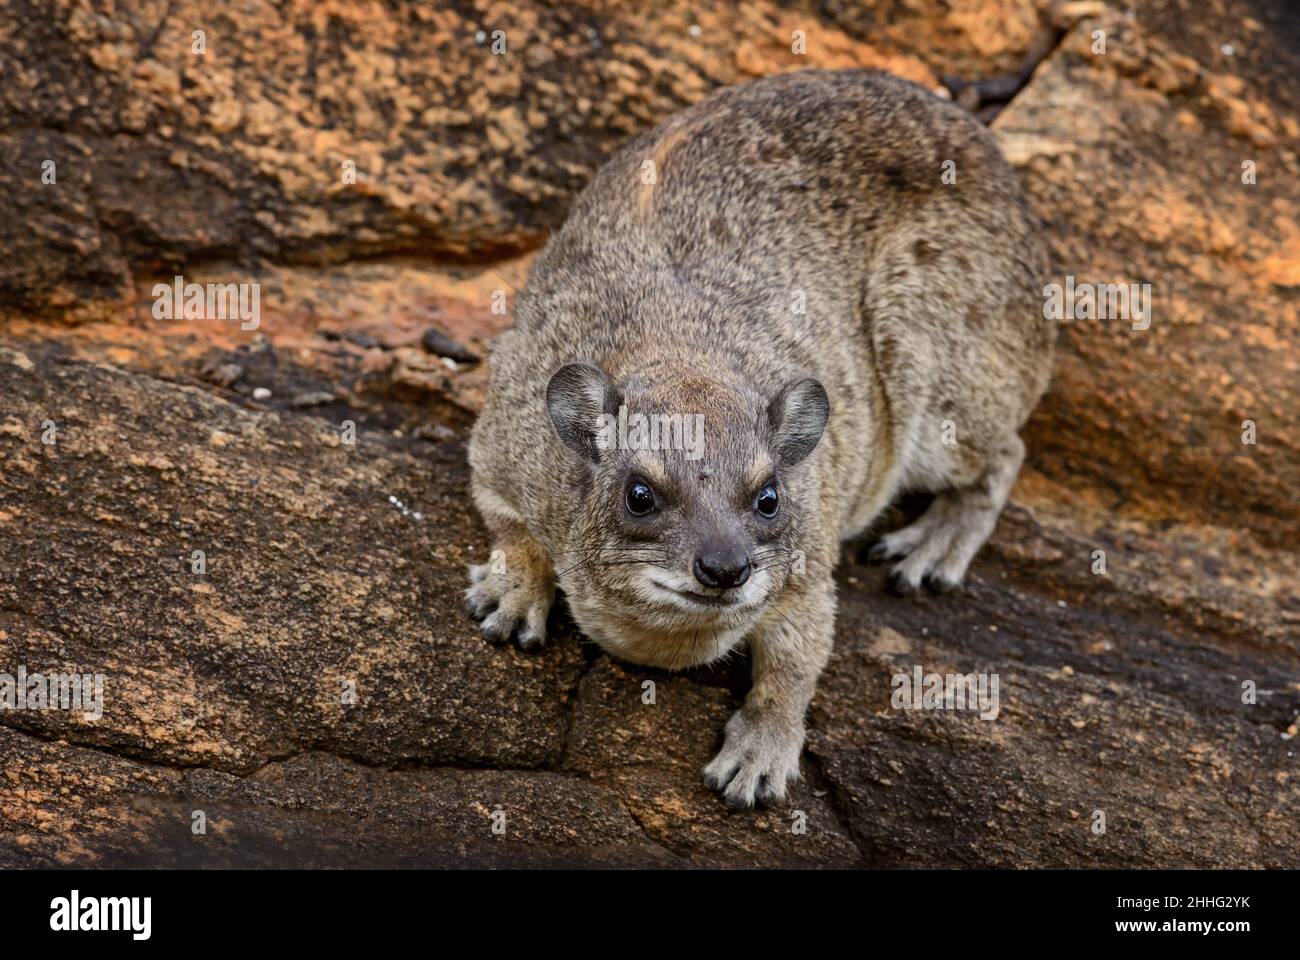 Comune roccia Hyrax - Procavia capensis, piccolo mammifero da colline e montagne africane, Tsavo Est, Kenya. Foto Stock